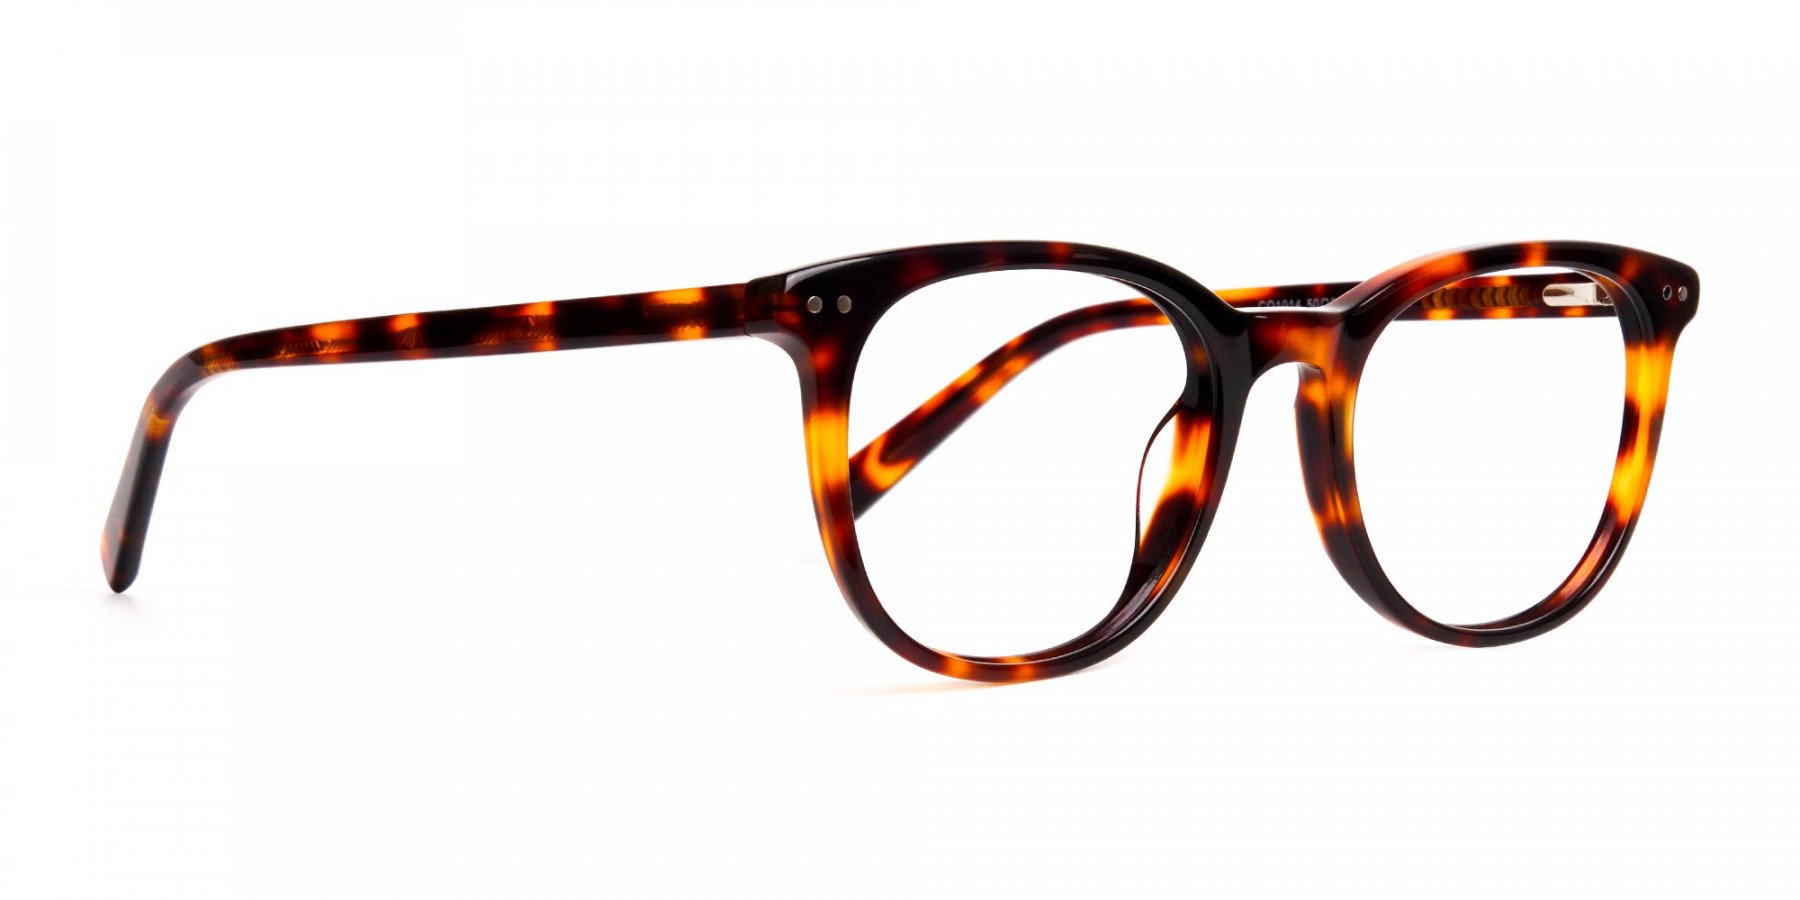 tortoise-shell-wayfarer-round-full-rim-glasses-frames-1